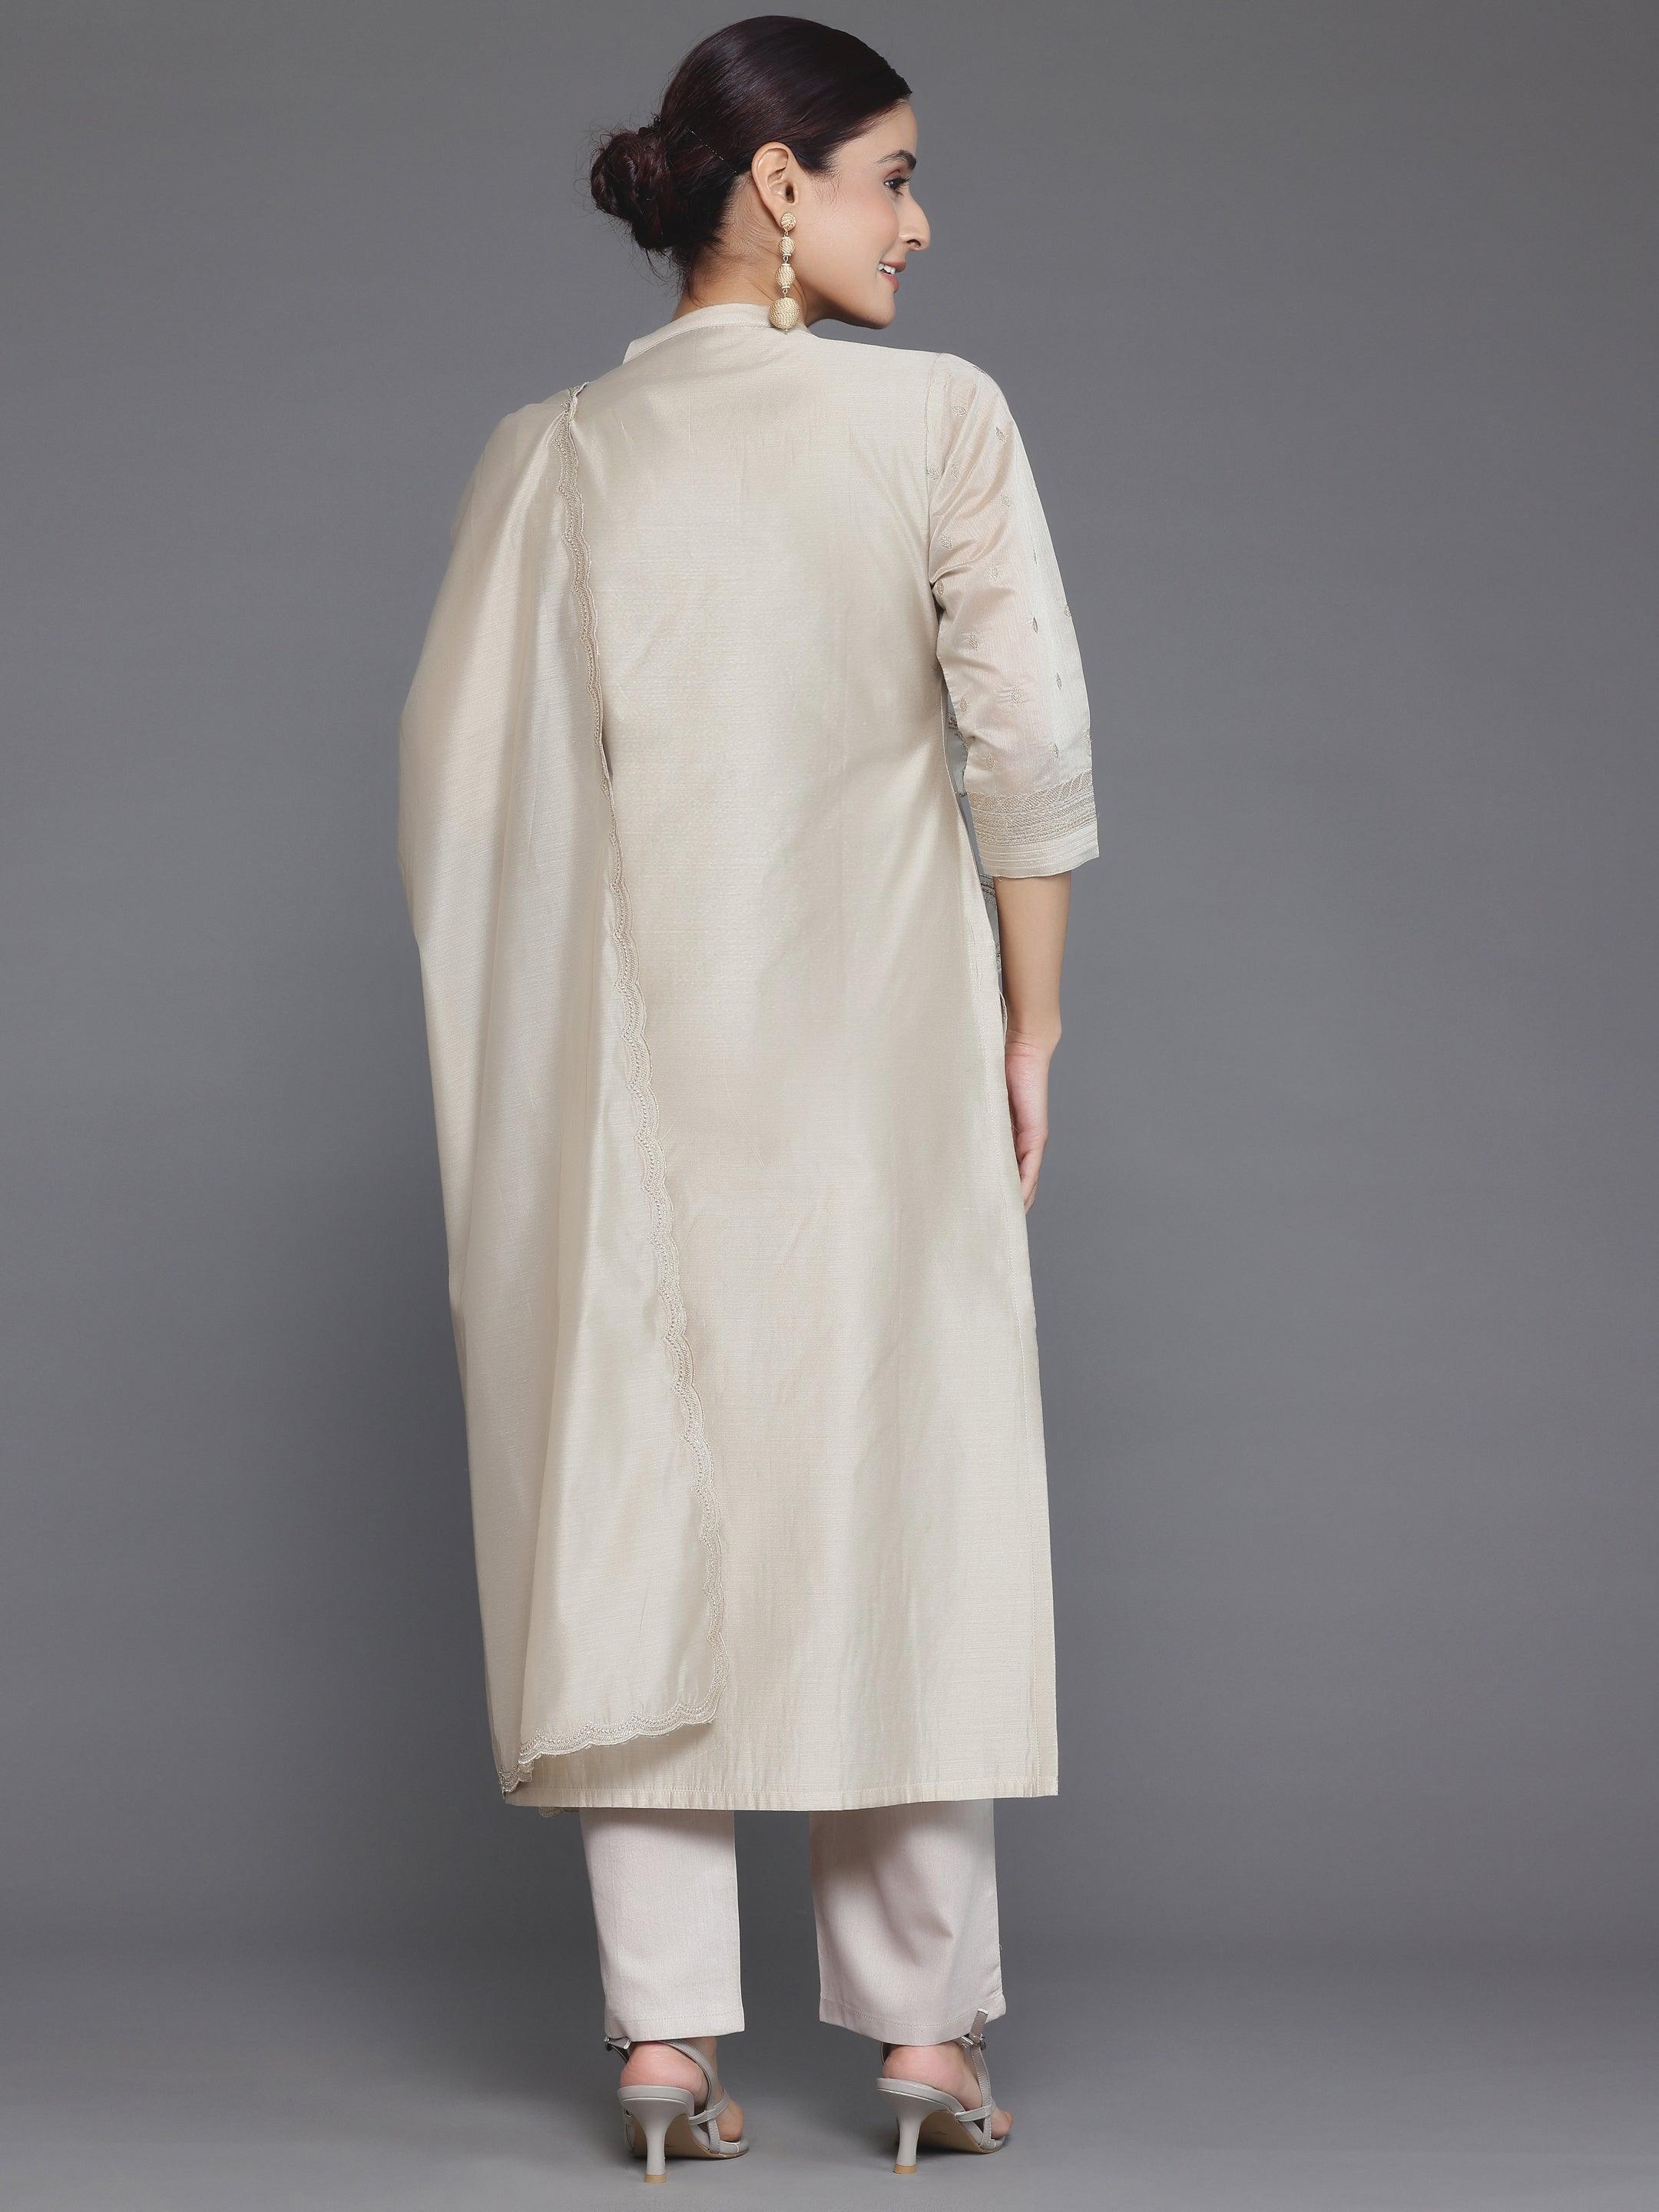 Beige Embroidered Chanderi Silk Straight Suit With Dupatta